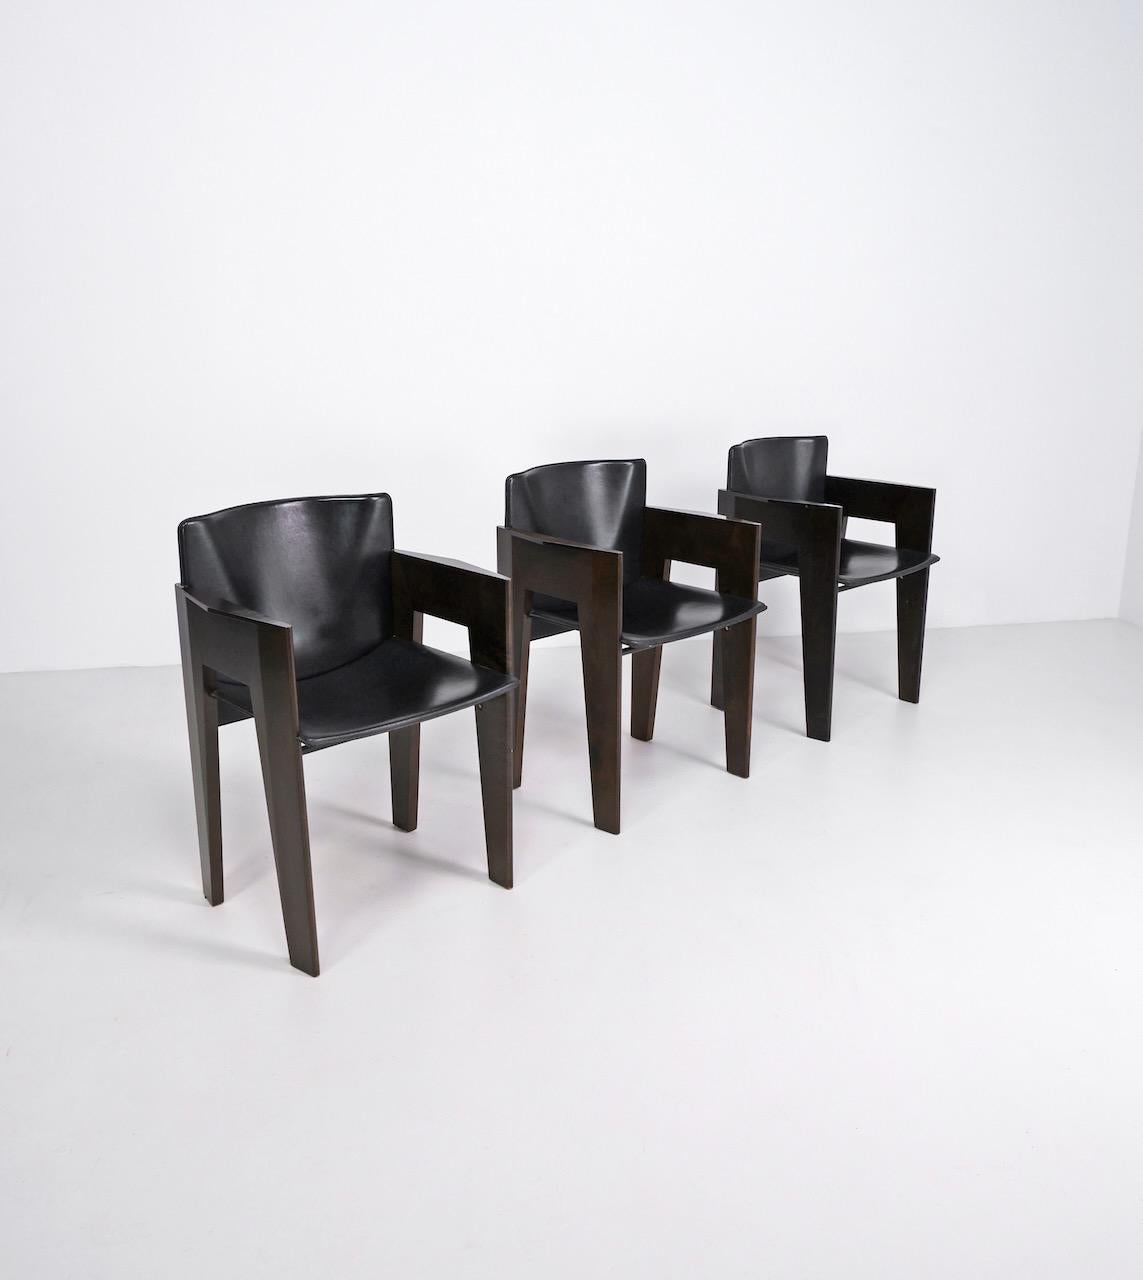  Chaises de salle à manger en cuir noir et bois teinté conçues par le designer néerlandais Arnold Merckx et produites par Arco dans les années 1980. 

Arnold Merckx est diplômé de l'Académie des arts visuels et des sciences techniques de Rotterdam,